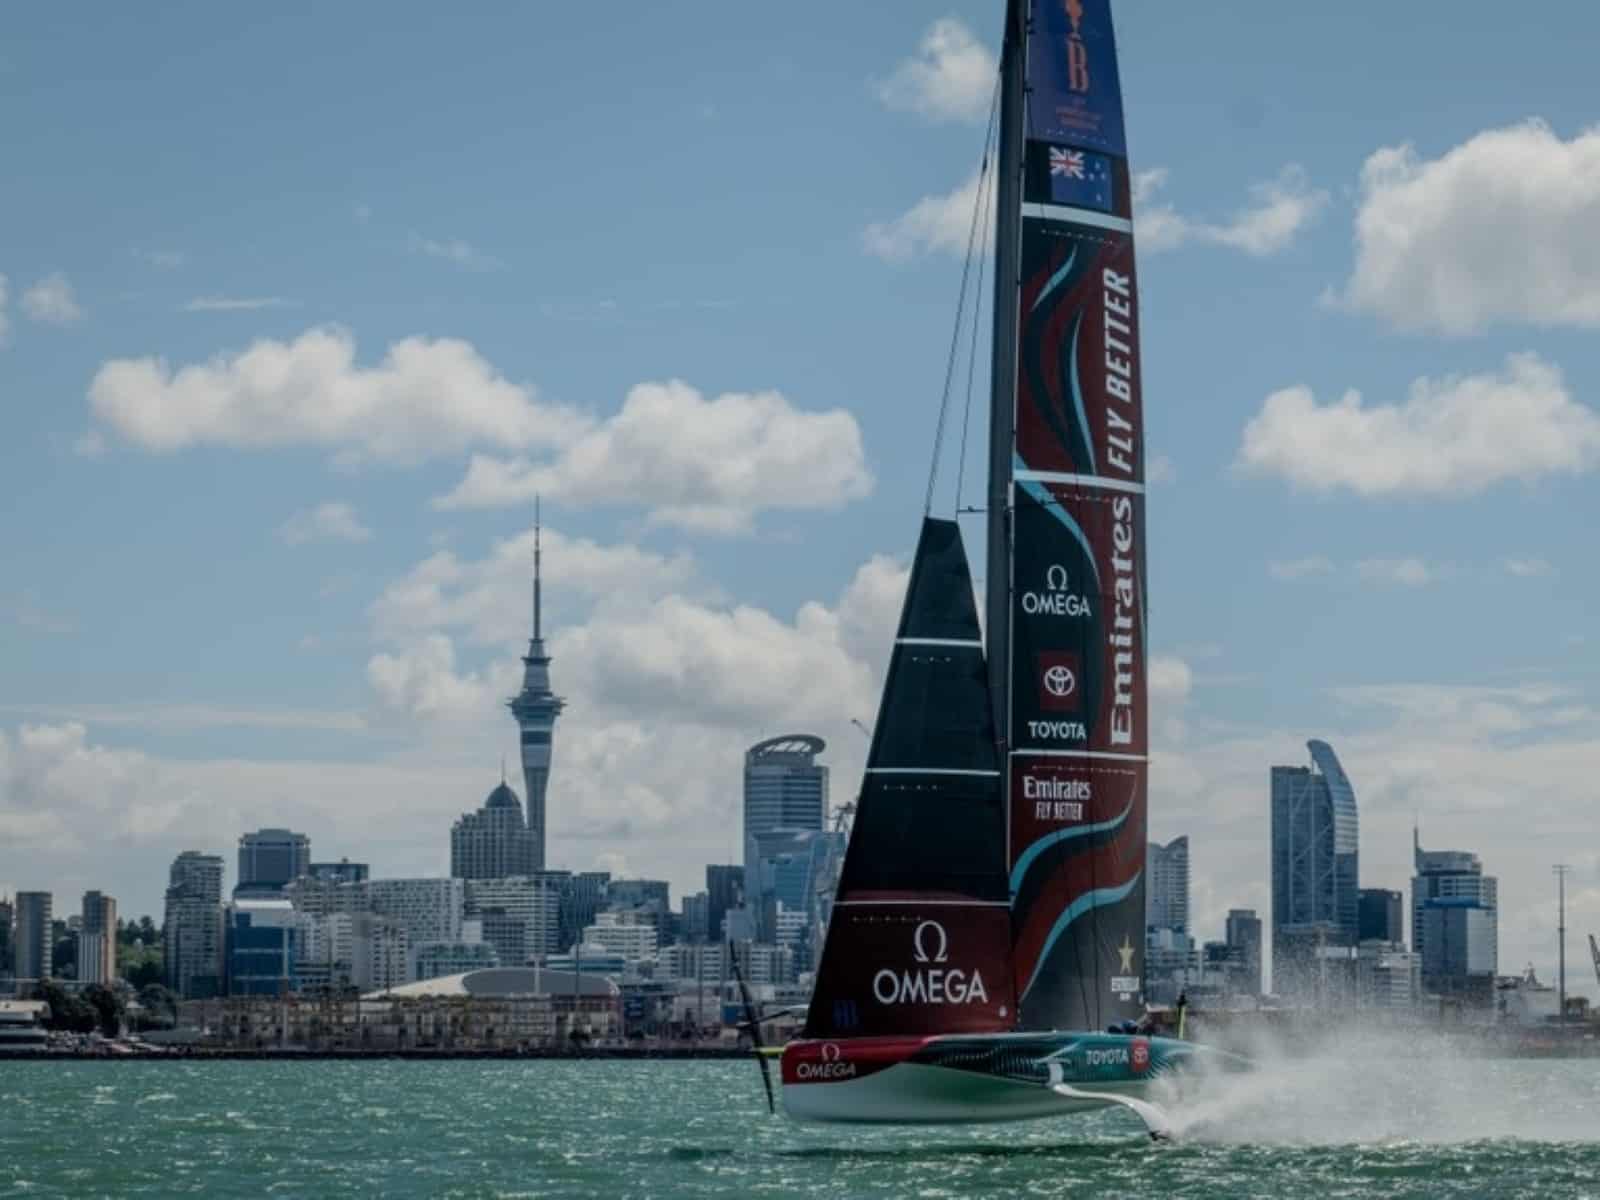 Emirates Team New Zealand mit Omega Präsenz auf Segel und Boot